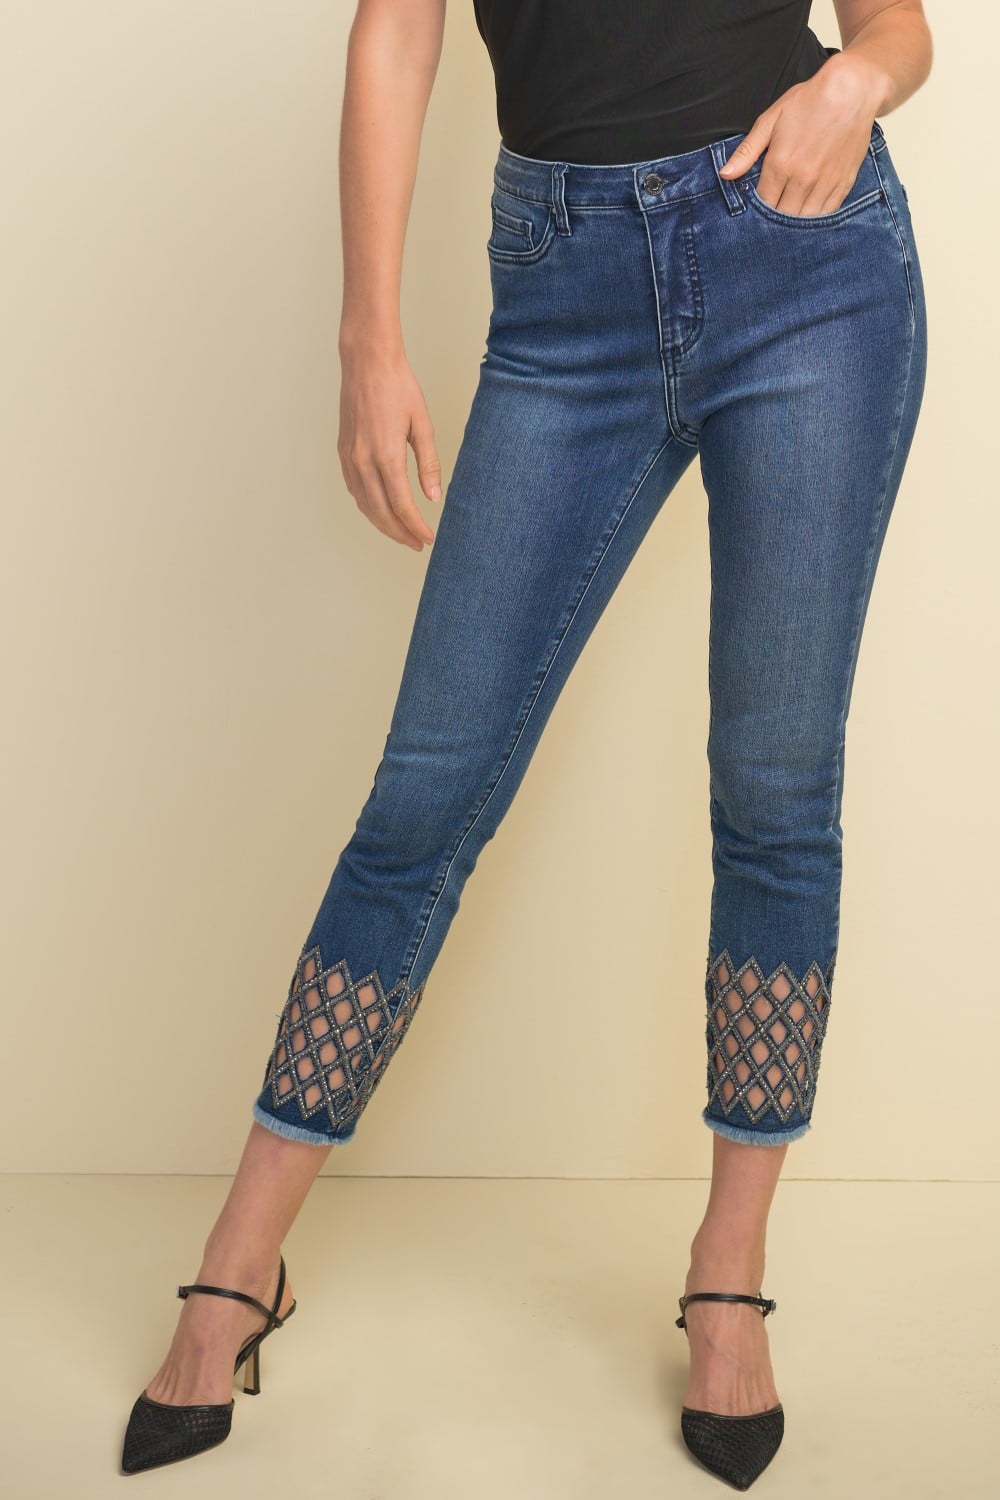 Joseph Ribkoff Jeans 211967 Denim-Medio-Azul Belle Mia Boutique